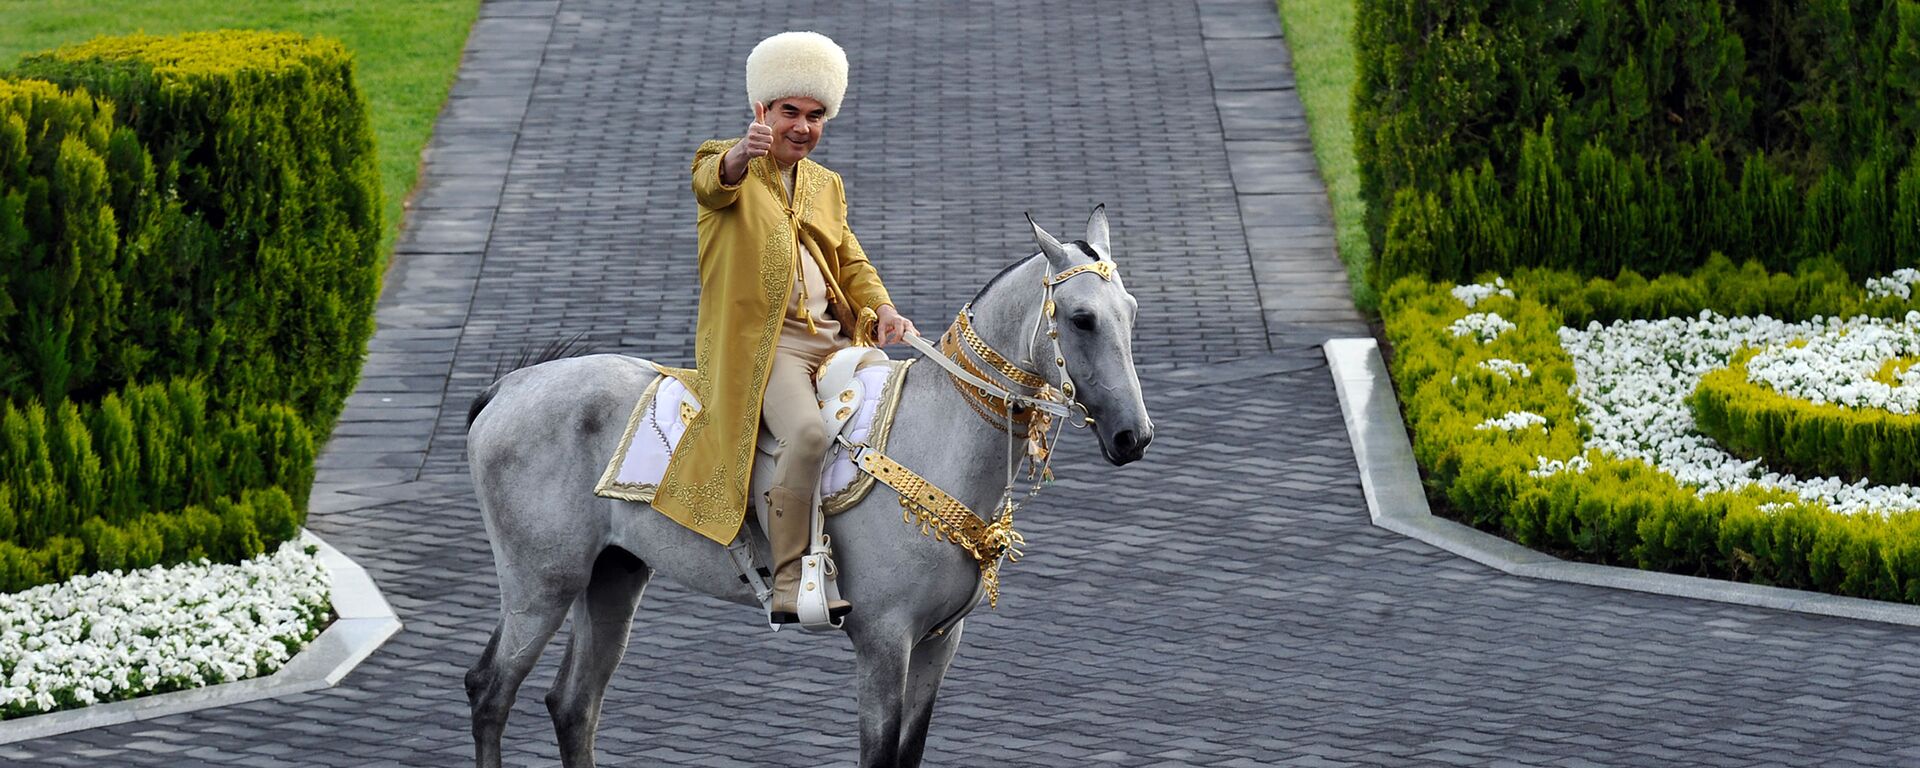 Президент Туркменистана Гурбангулы Бердымухамедов на ахалтекинском жеребце принимает участие в праздновании Дня лошади в Ашхабаде - Sputnik Ўзбекистон, 1920, 27.02.2021